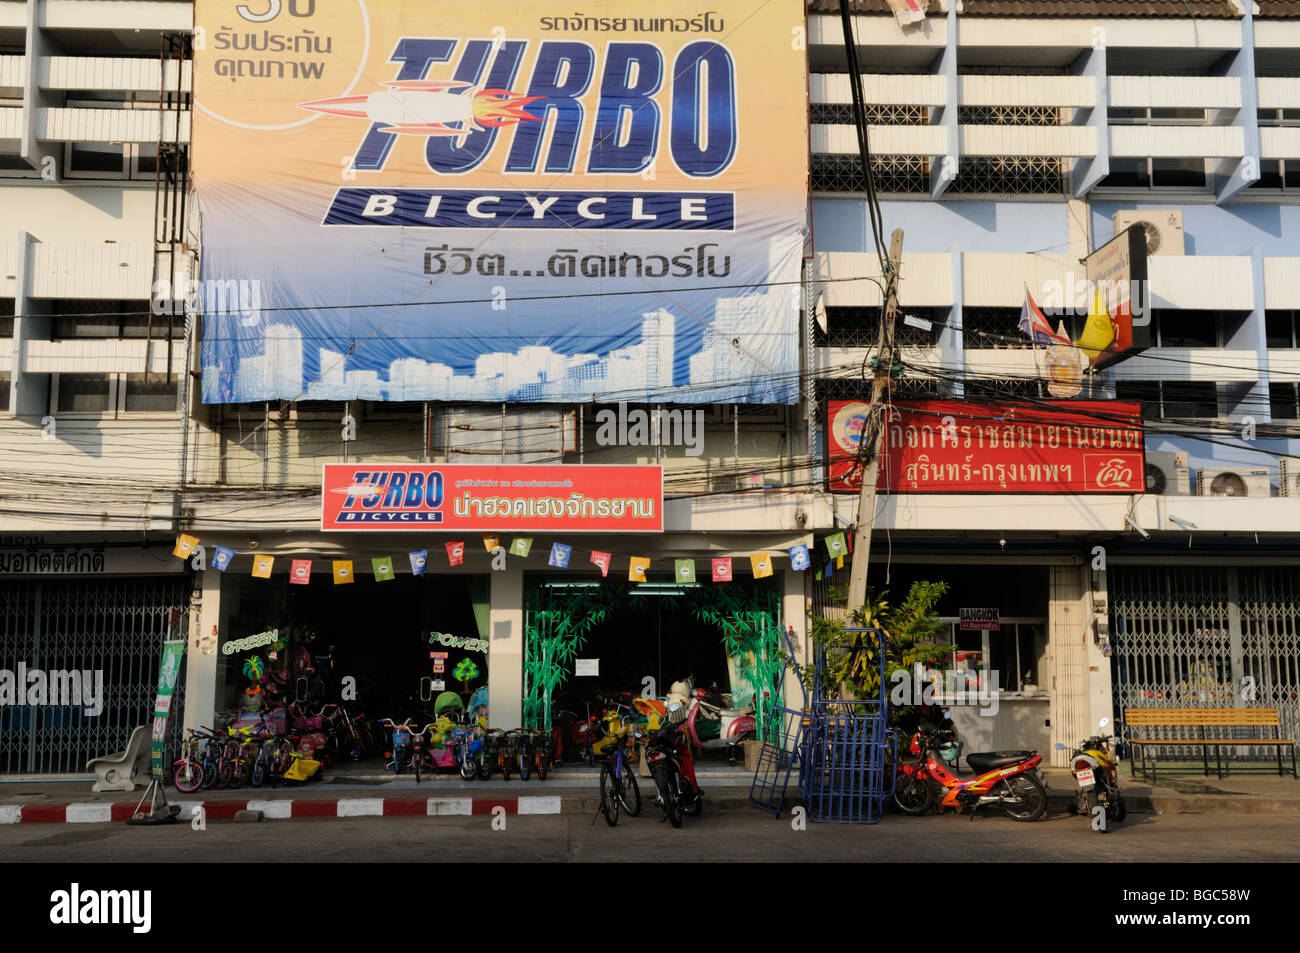 Tailandia, Surin; Escena callejera con tienda de bicicletas Turbo  Fotografía de stock - Alamy